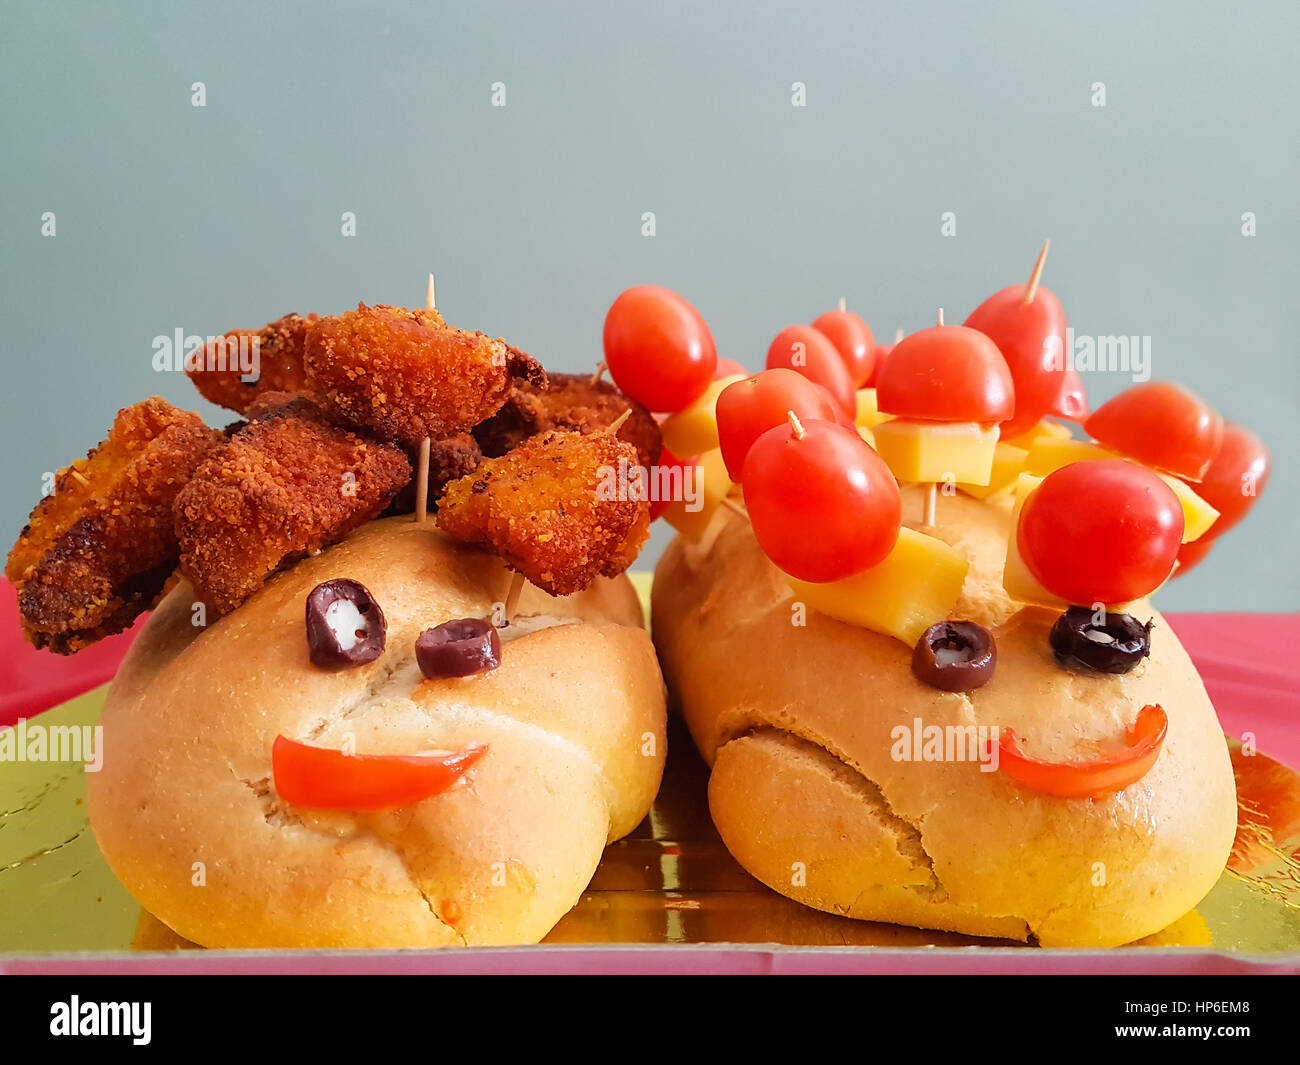 Kinder Party Essen mit zwei Brote glücklich menschliches Gesicht aussieht. Stockfoto